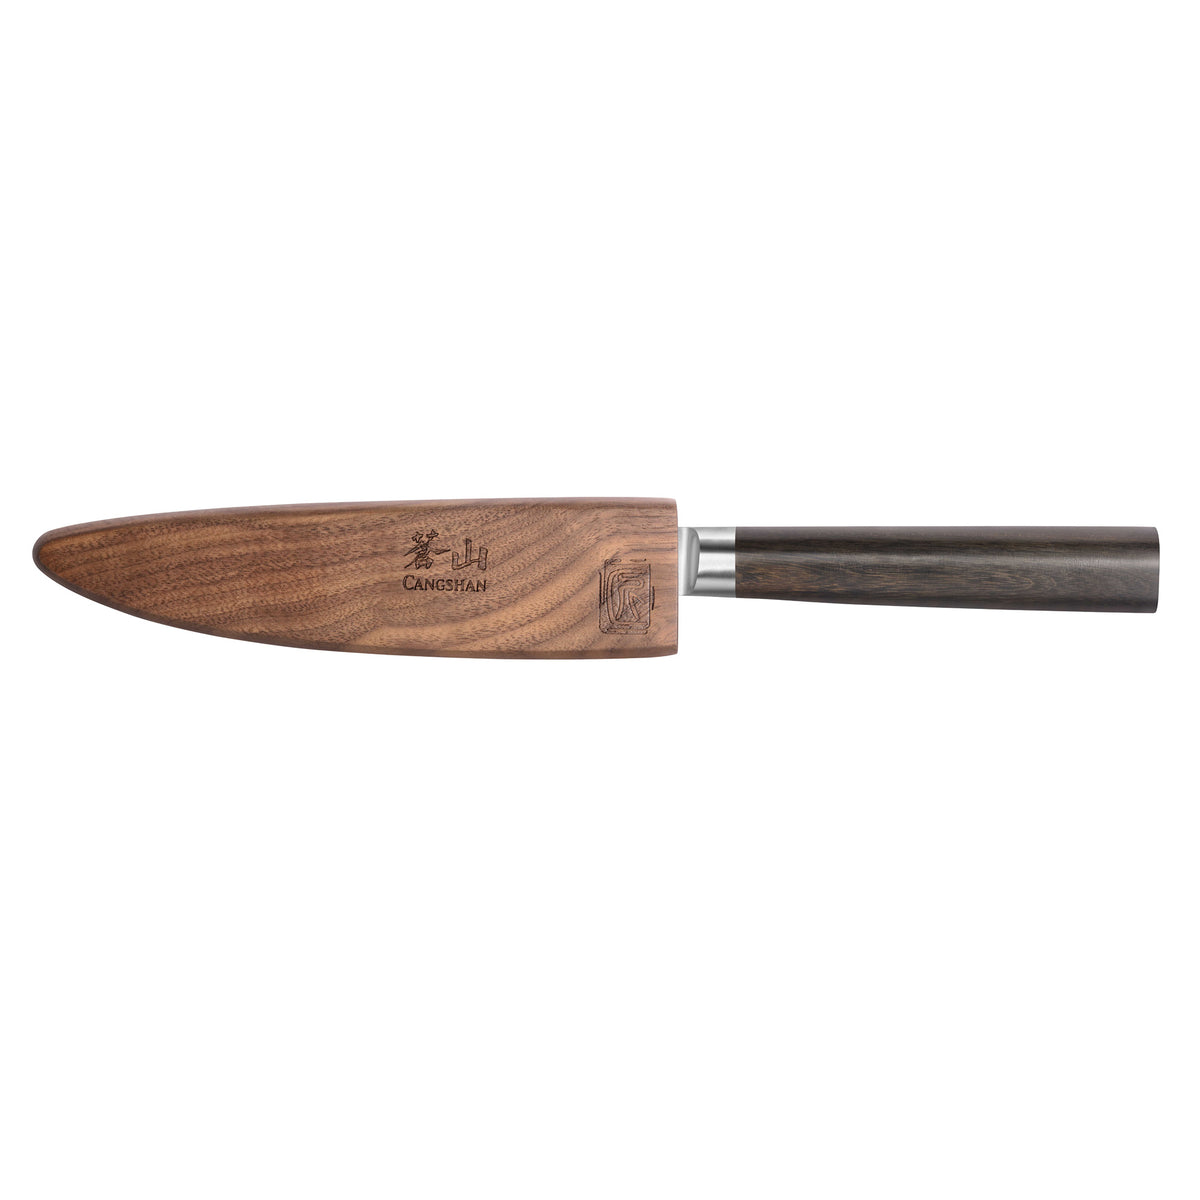 HAST Kitchen Utility Knife-5 Inch Super Sharp-Professional-Premium Powder  Steel-Japanese Blade Style-Sleek Modern Design-Lightweight-Ergonomic  Handle-Minimalist Kitchen Décor (Titanium Gold) - Yahoo Shopping